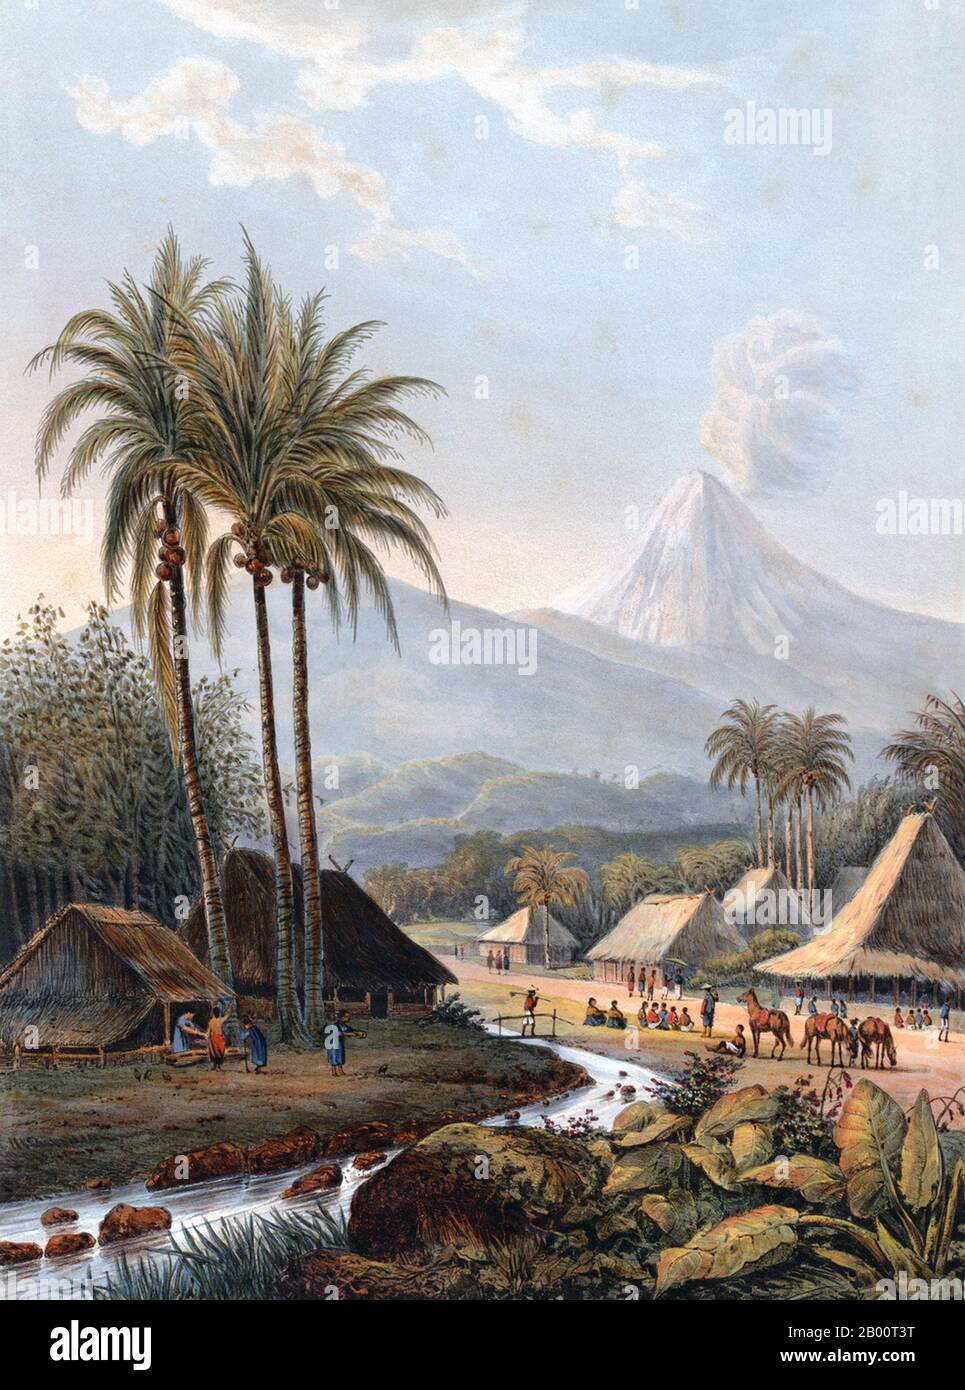 Indonésie: Le volcan Semeru (vue de la résidence Pasuruan). Lithographie d'Abraham Salm (1801-1876), 1872. Cette lithographie colorée montre Smeroe (Semeru), le plus grand volcan de l'île de Java. Aussi connu sous le nom de Mahameru, ou la Grande montagne, le volcan a éclaté au moins une fois par an au cours du XIXe siècle, et depuis 1967 a été dans un état d'activité quasi constante. Cette vue de la ville de Pasuruan montre un panache de fumée venant du sommet de la montagne. Le peintre néerlandais Abraham Salm (1801-1876) a passé 29 ans en Indonésie, où il a produit de nombreuses peintures de paysages dramatiques. Banque D'Images